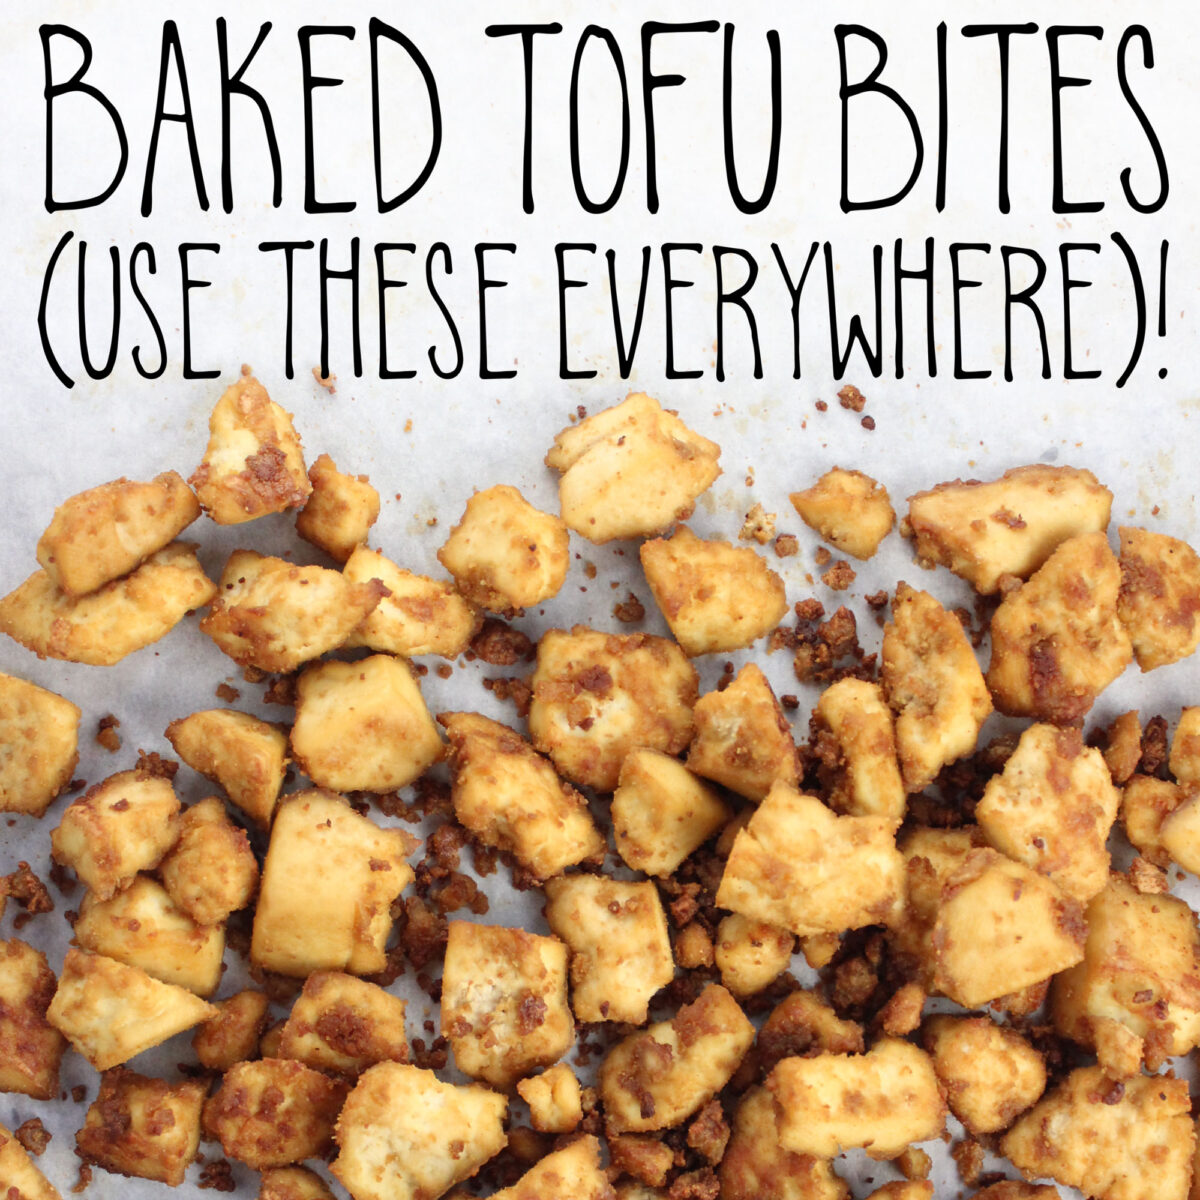 Baked Tofu Bites (Use These Everywhere)!